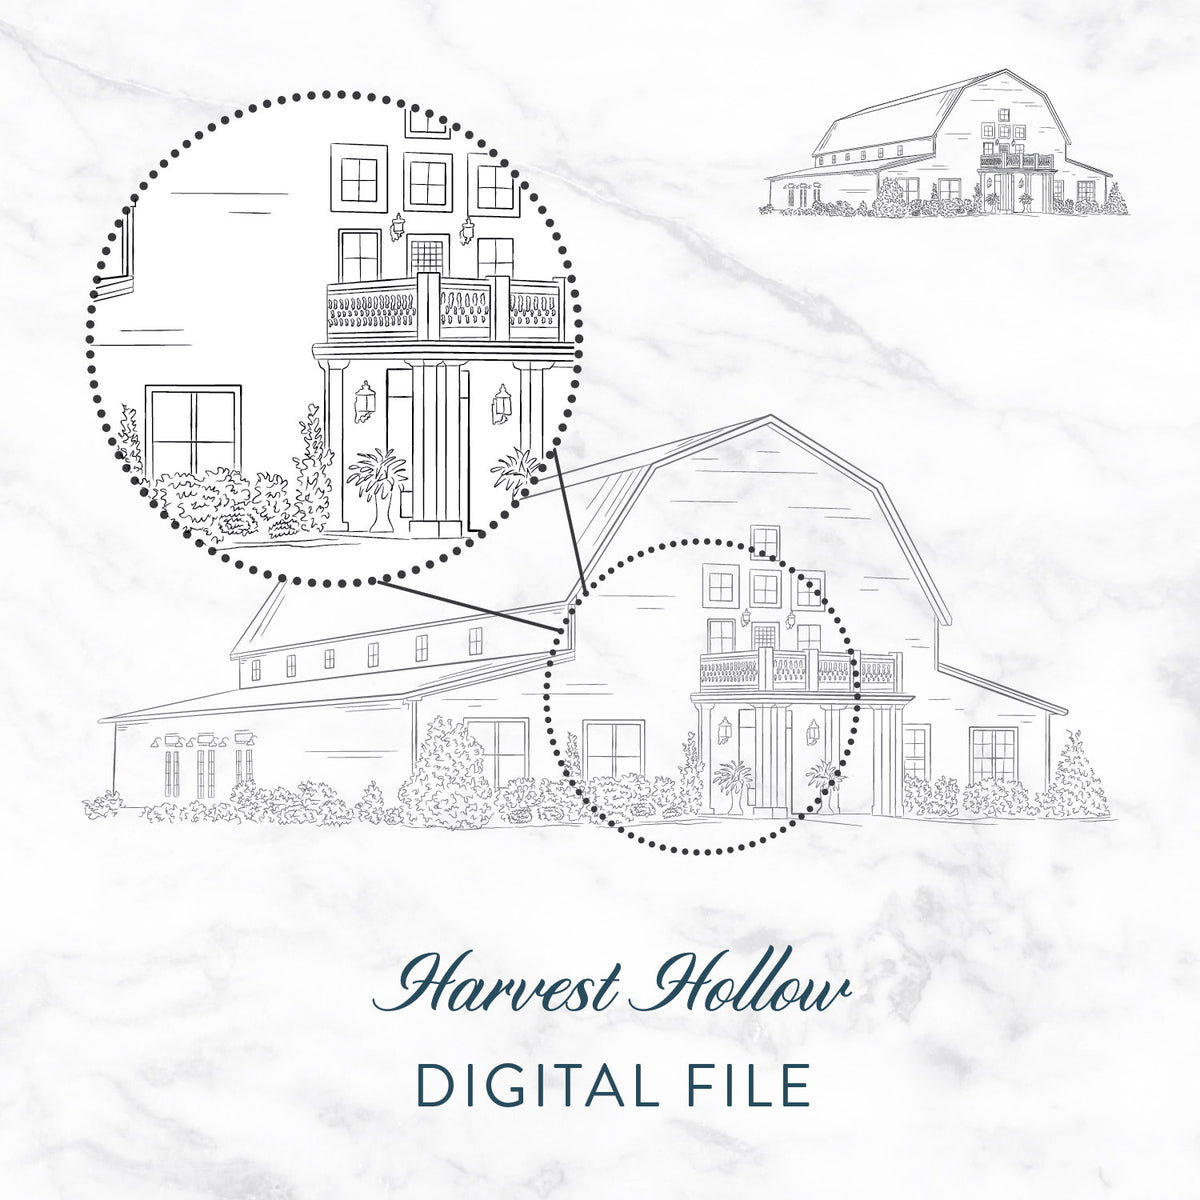 Harvest Hollow Sketch Digital File